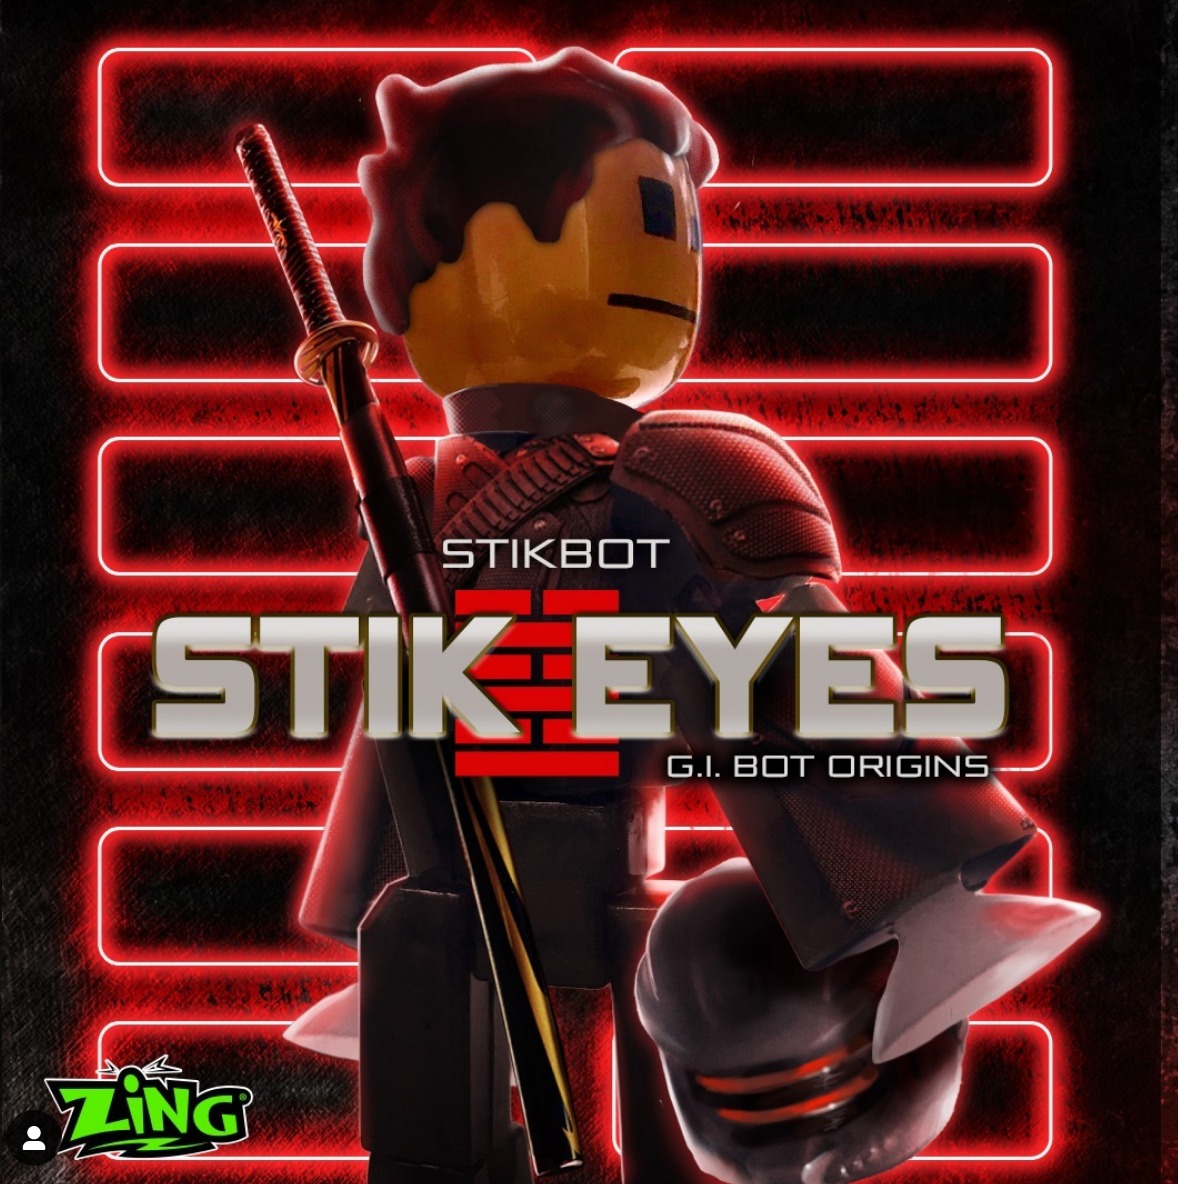 Pirate stick bot. I put googly eyes. : r/stikbot